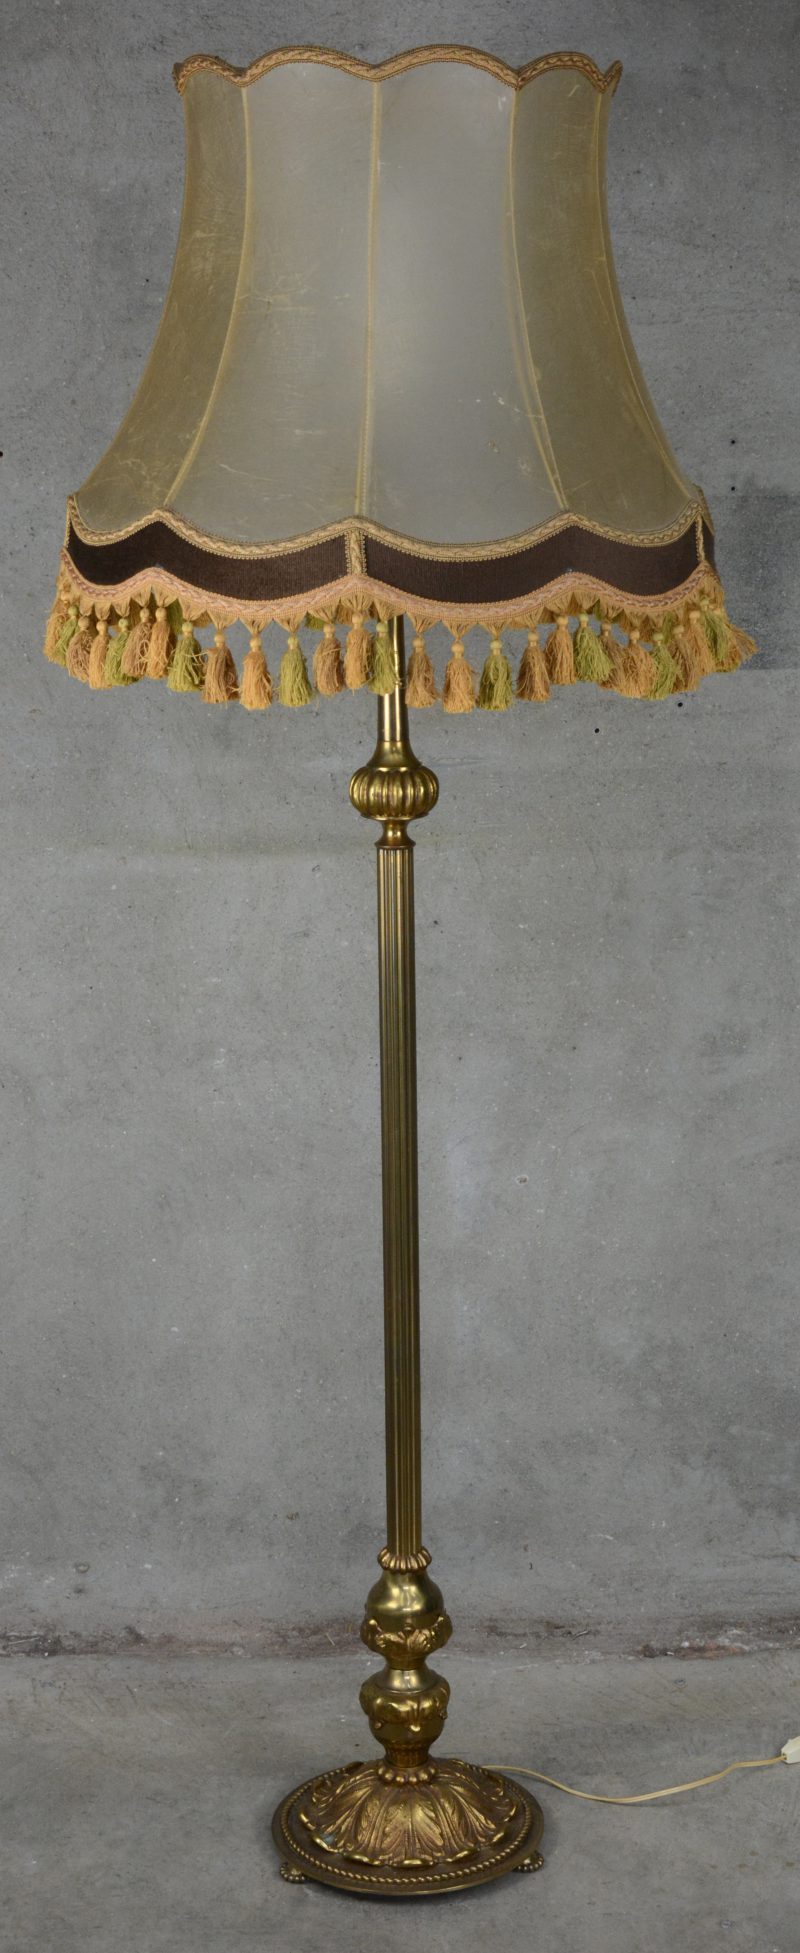 Een messingen staande lamp, de voet versierd met acantusbladeren.